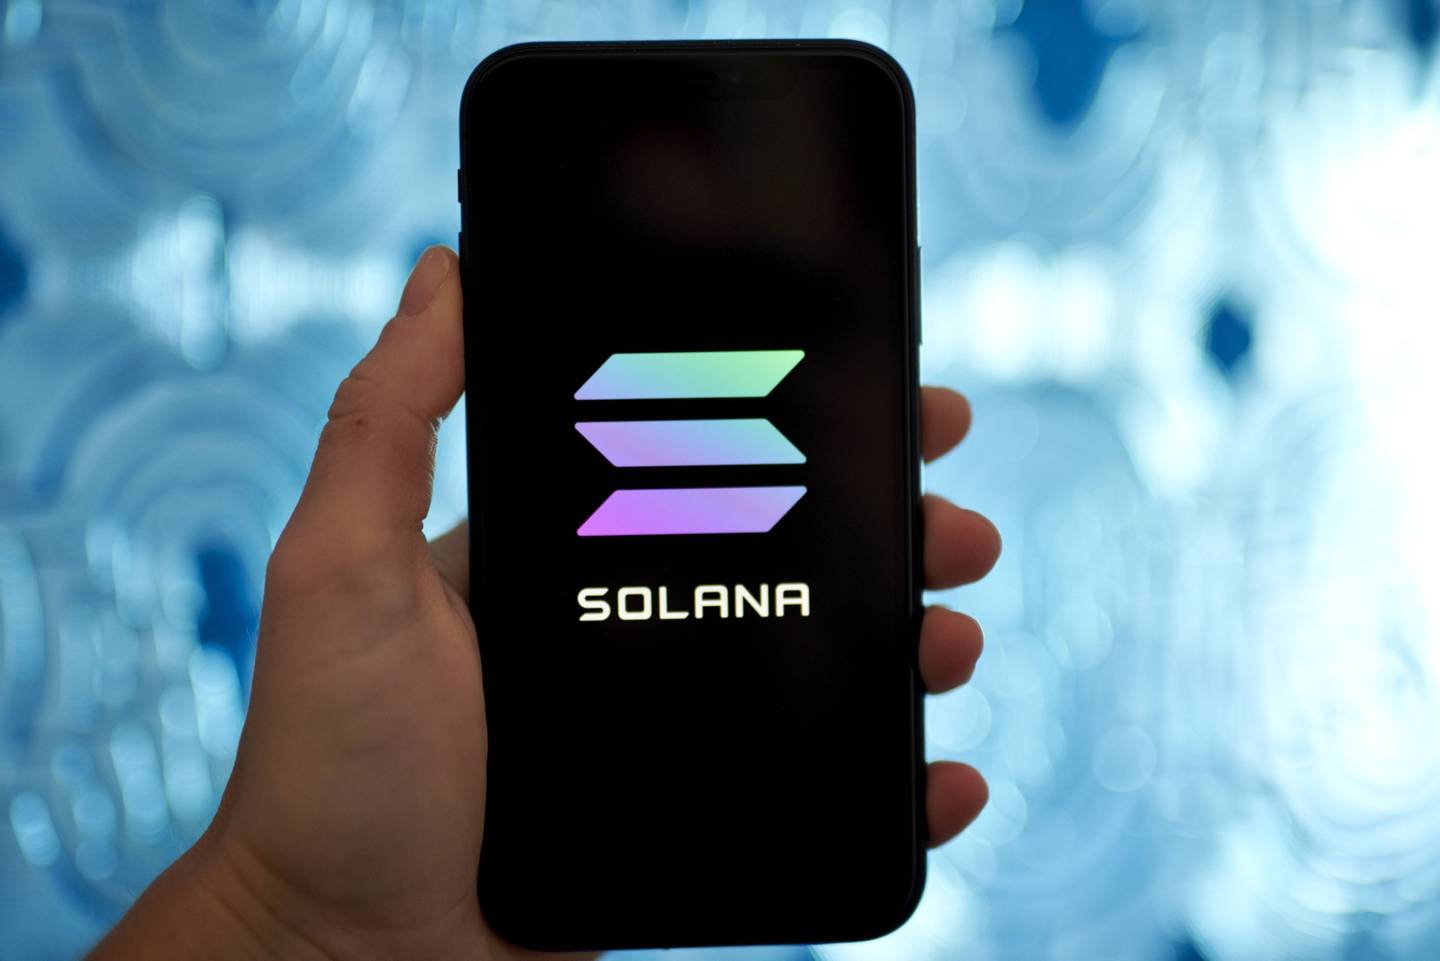 El logo de Solana en un smartphone en el barrio de Brooklyn de Nueva York, Estados Unidos, el sábado 31 de julio de 2021.dfd